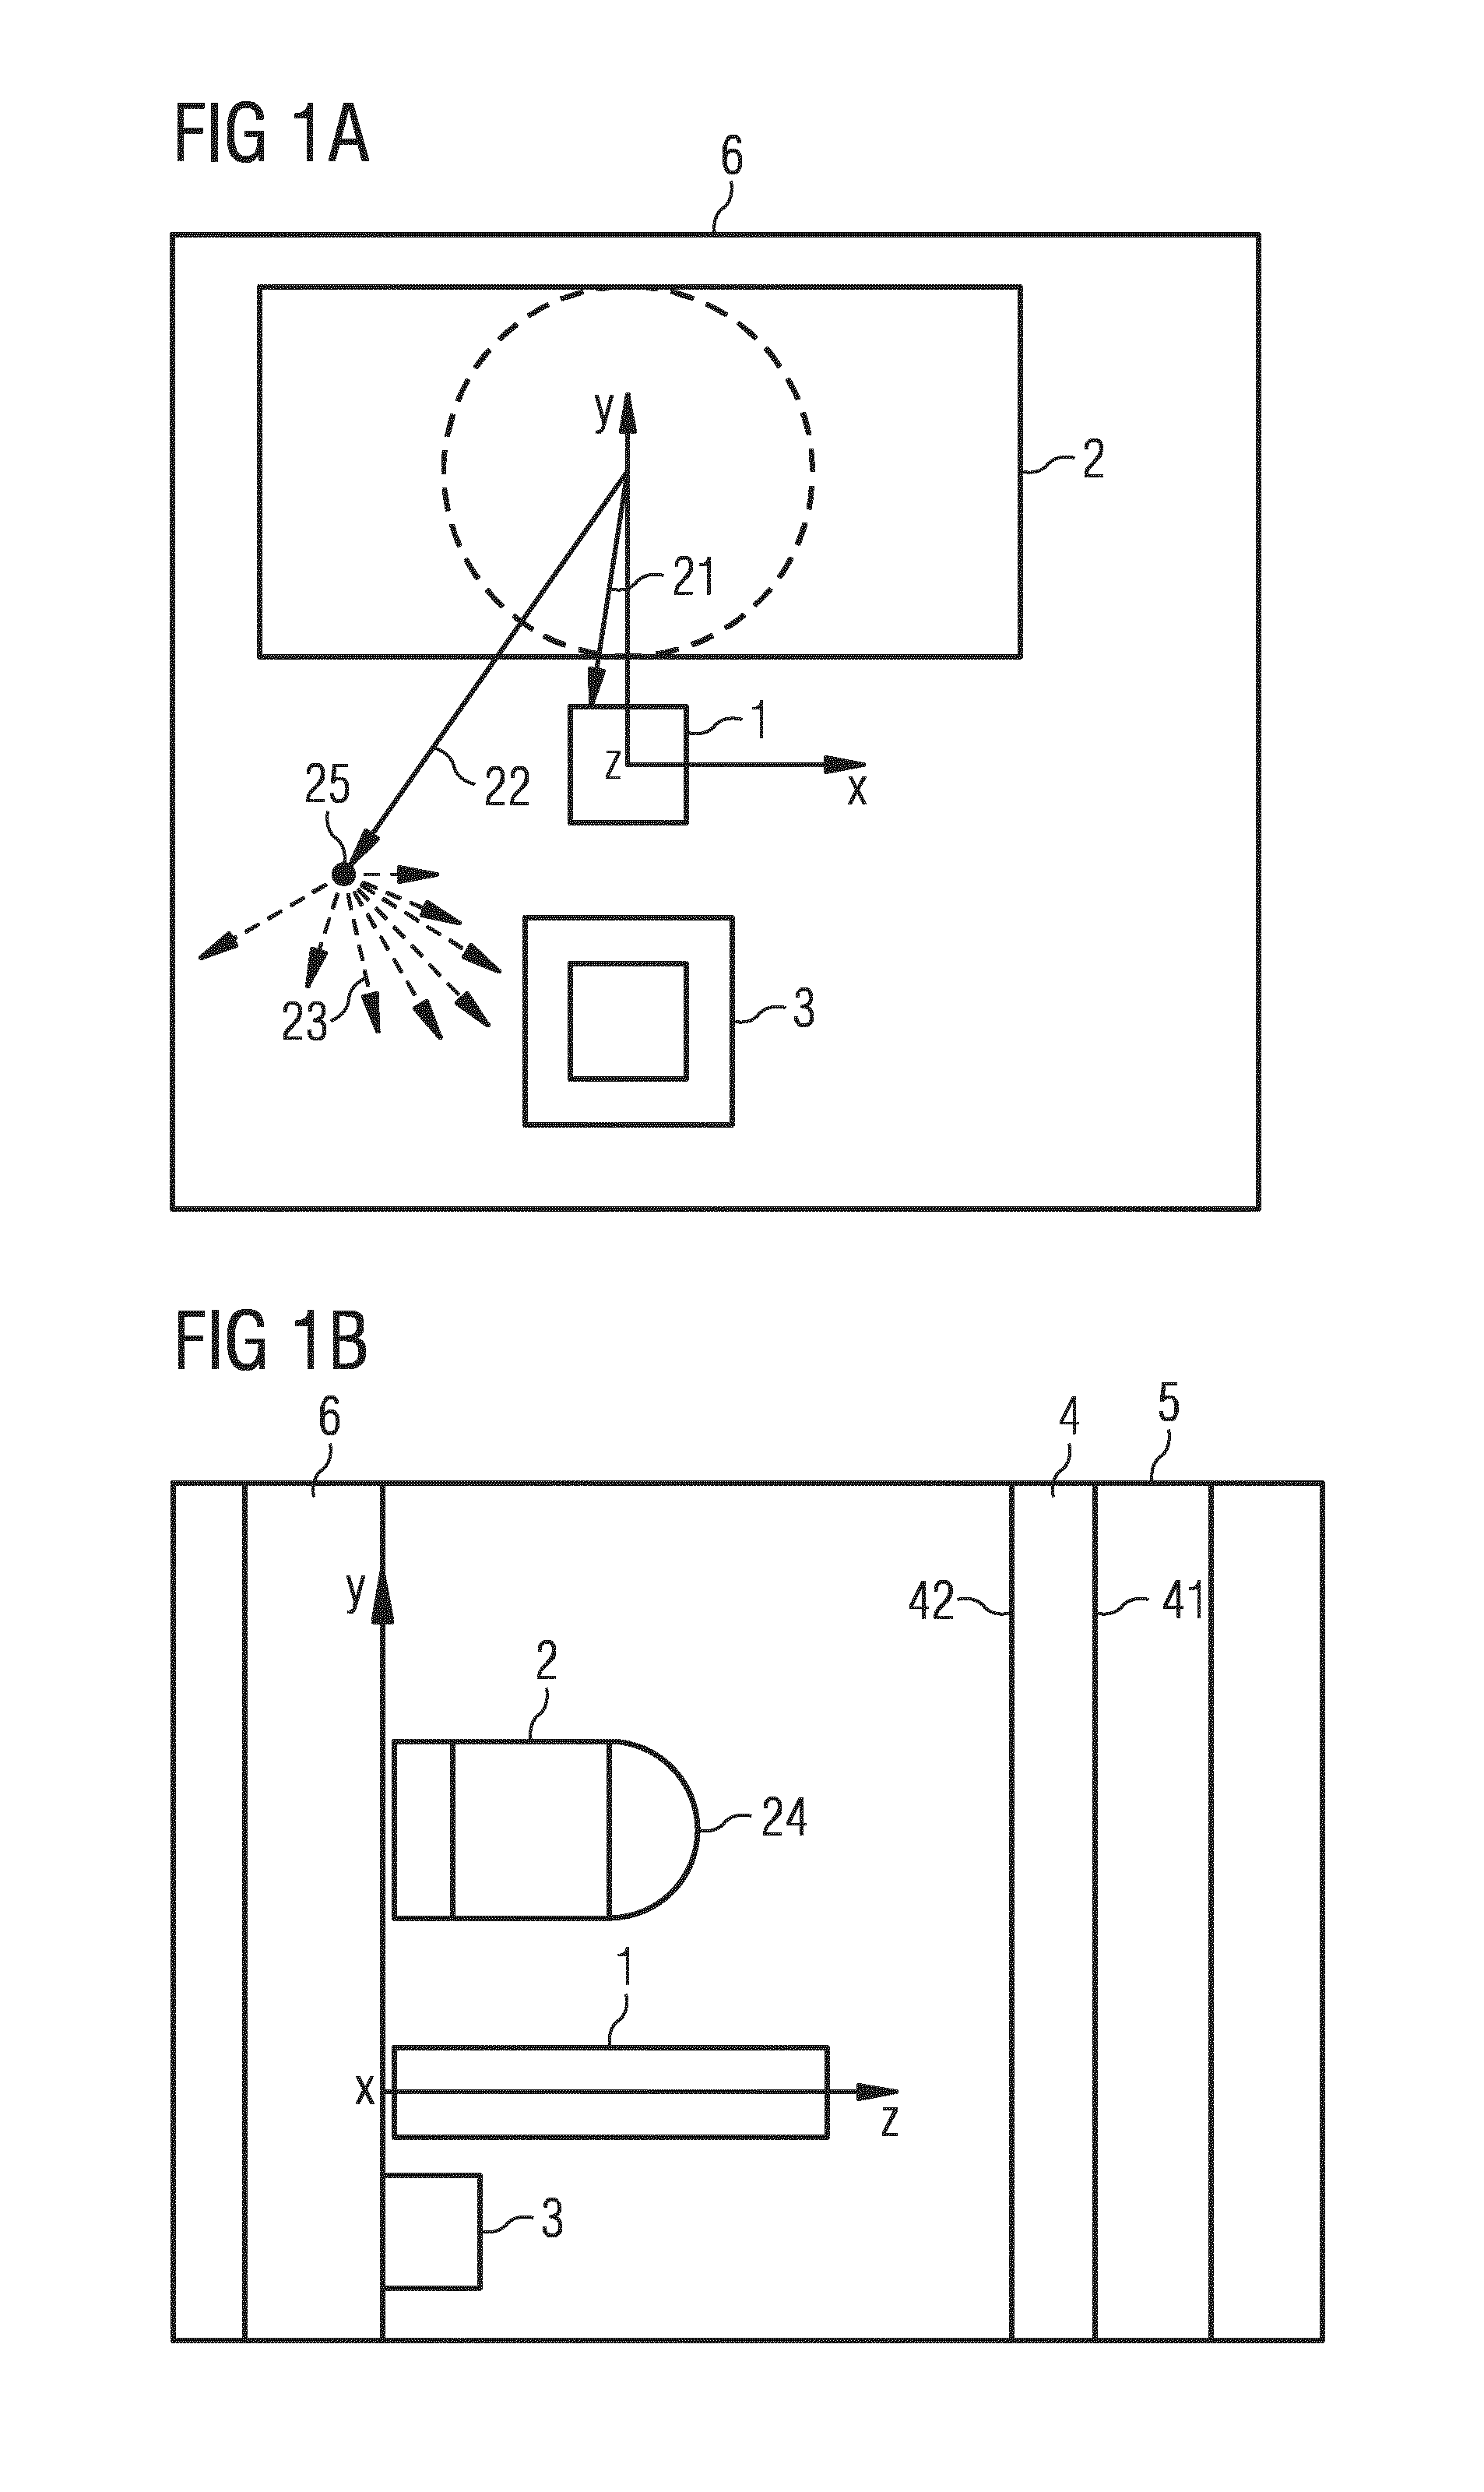 Proximity sensor arrangement